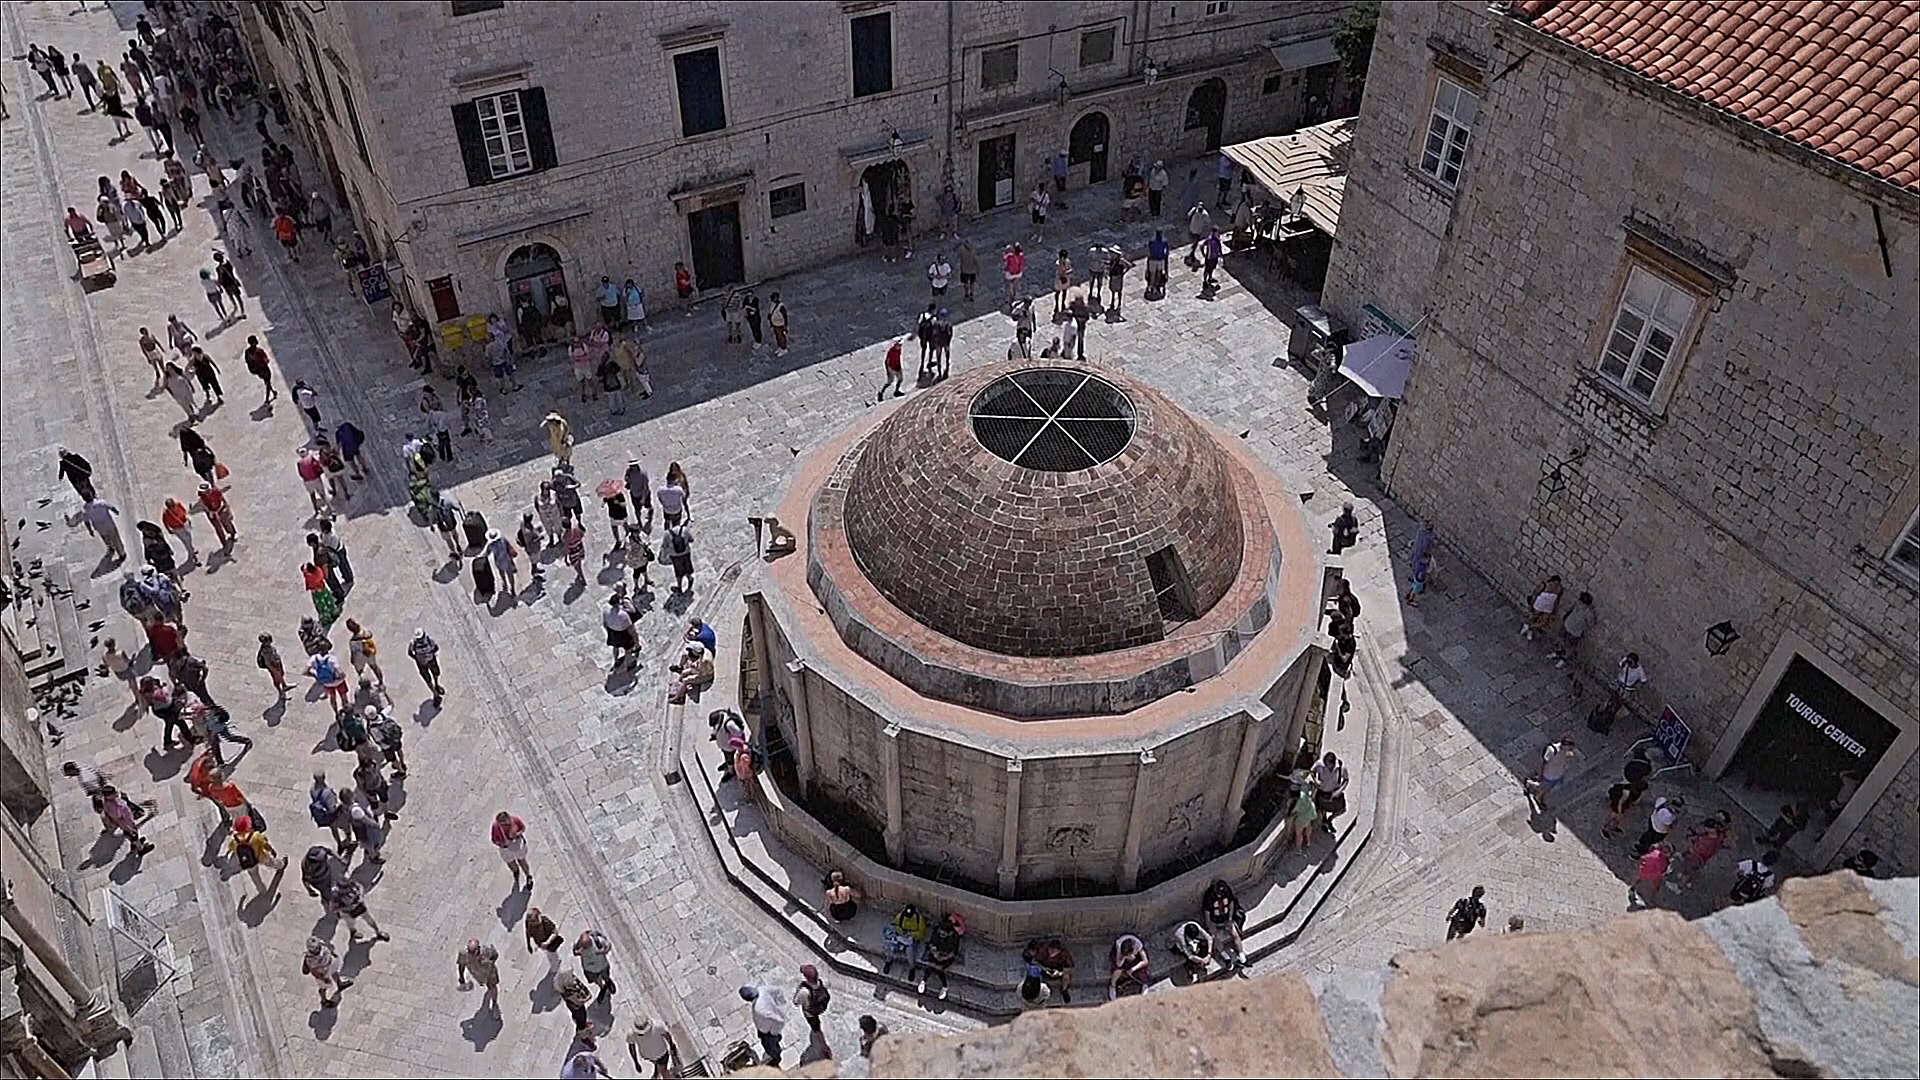 Хорватский Дубровник устал от туристов и вводит лимиты и налоги